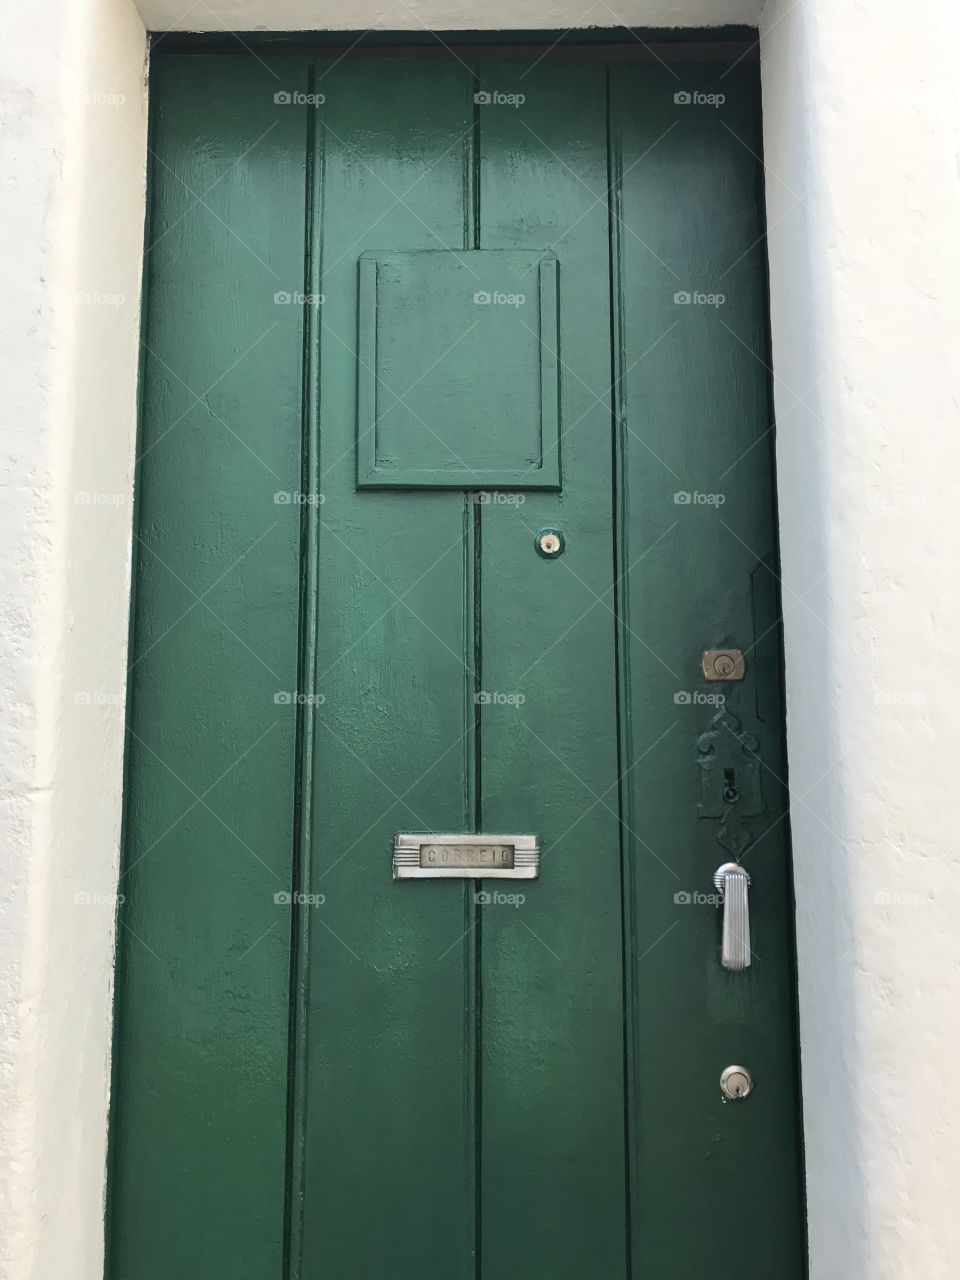 The green door 